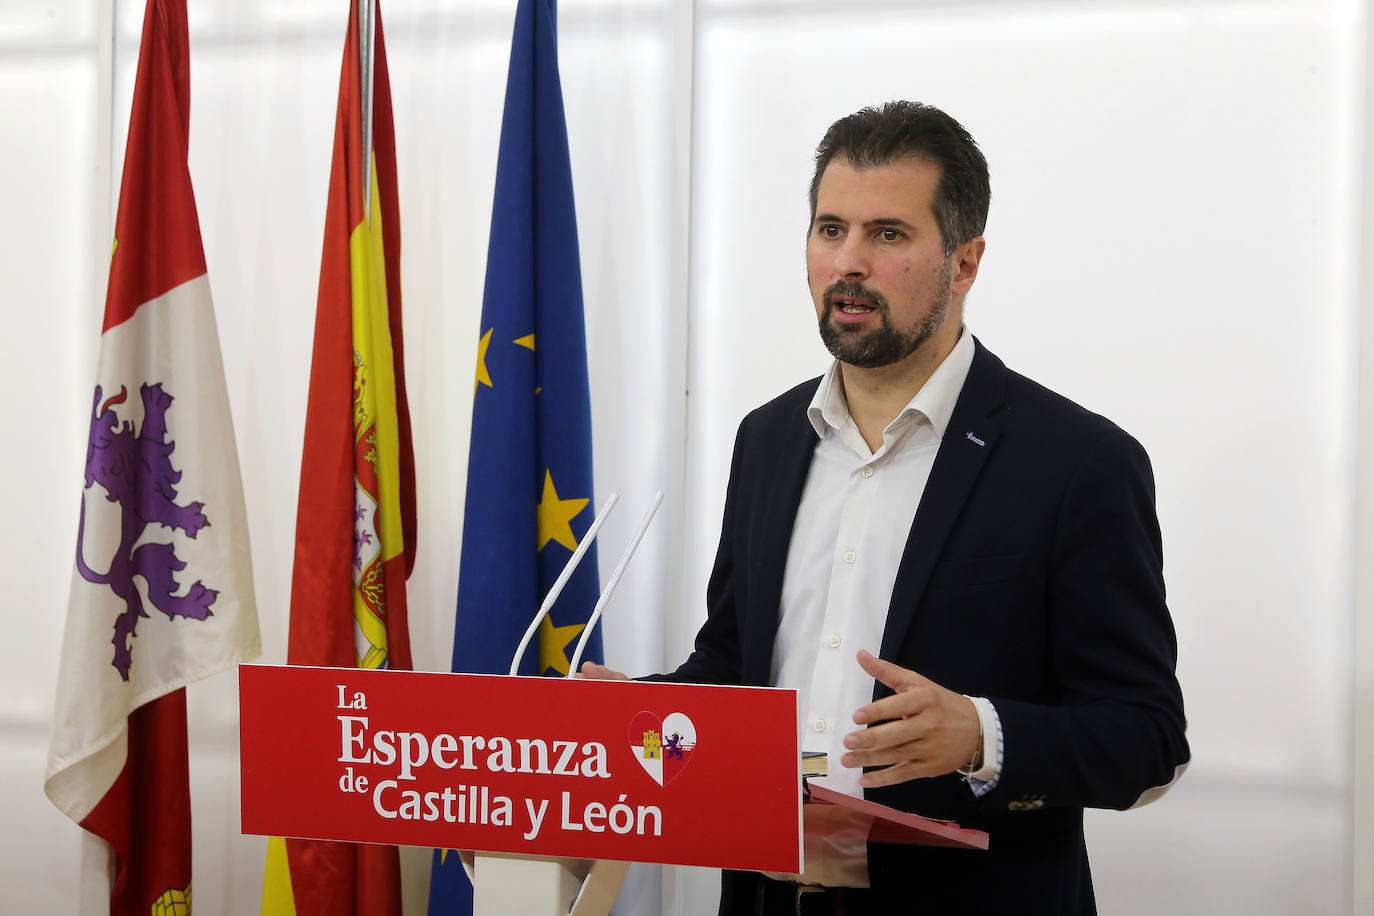 El secretario general del PSOE en Castilla y León, Luis Tudanca, analiza cuestiones de actualidad